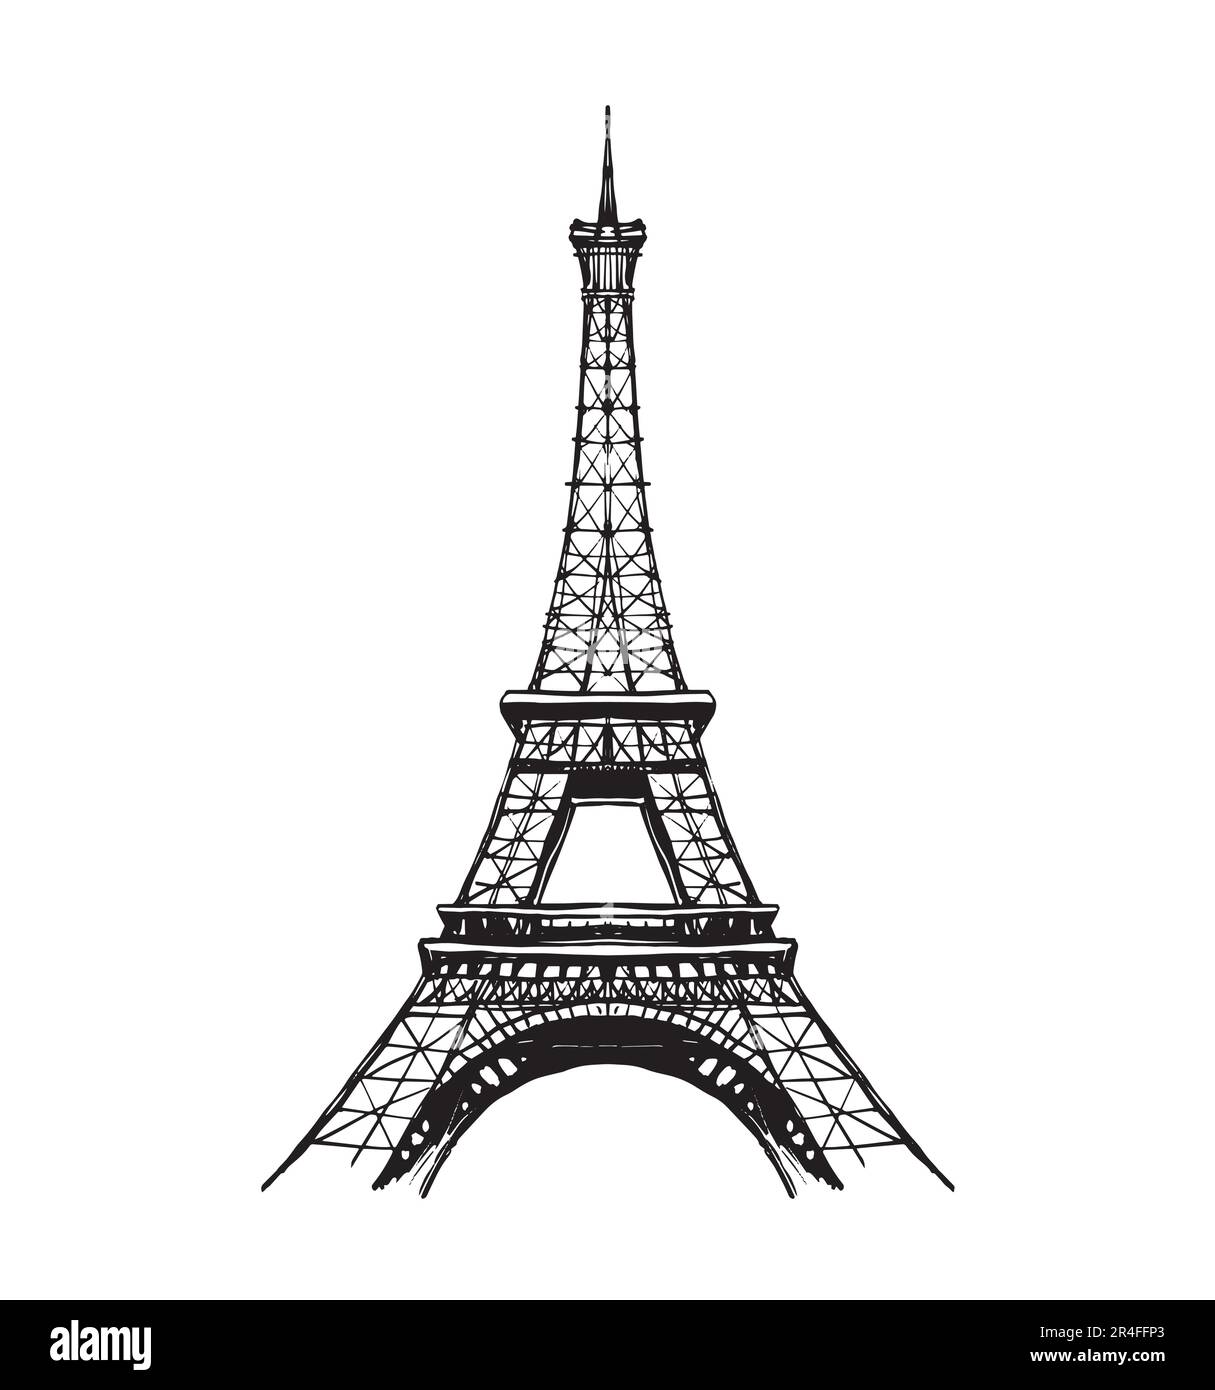 Tour Eiffel en France, vue directe, dessin de lignes de caniche, carte vintage, autocollant symbole de la France. Gravure moderne sur fond blanc Illustration de Vecteur